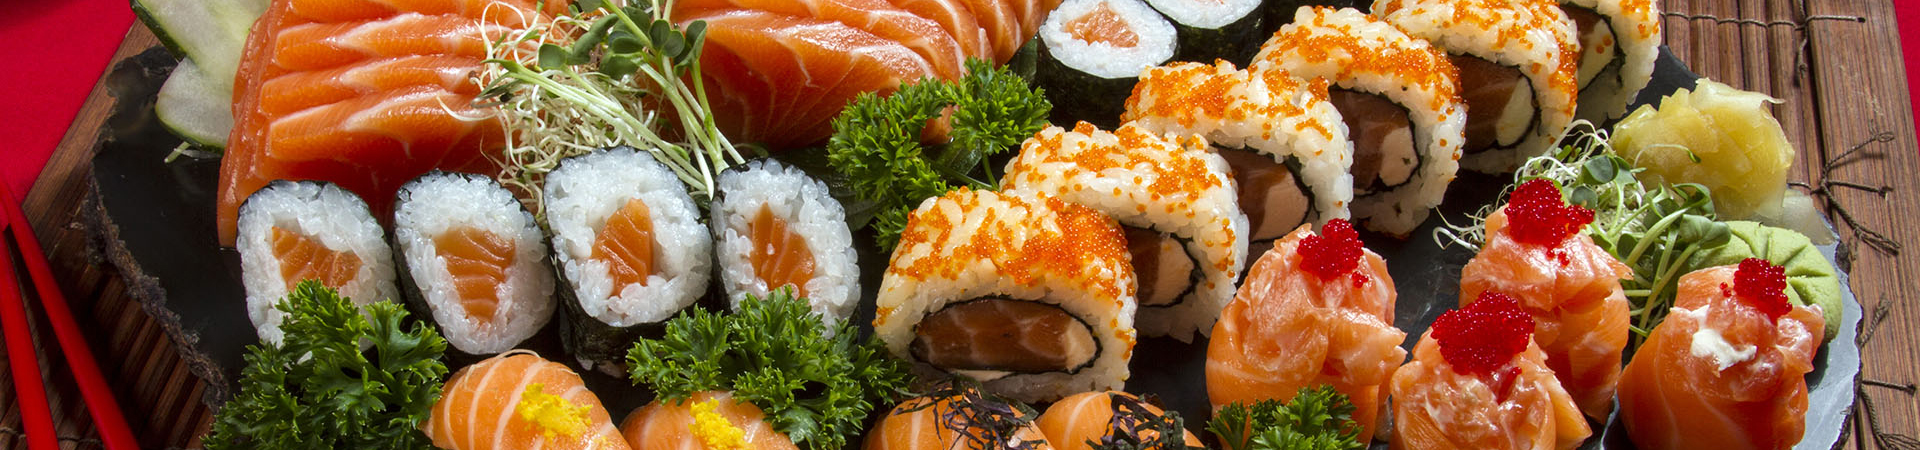 fogyni egyél sushit mindennap élesztő kivonat fogyás